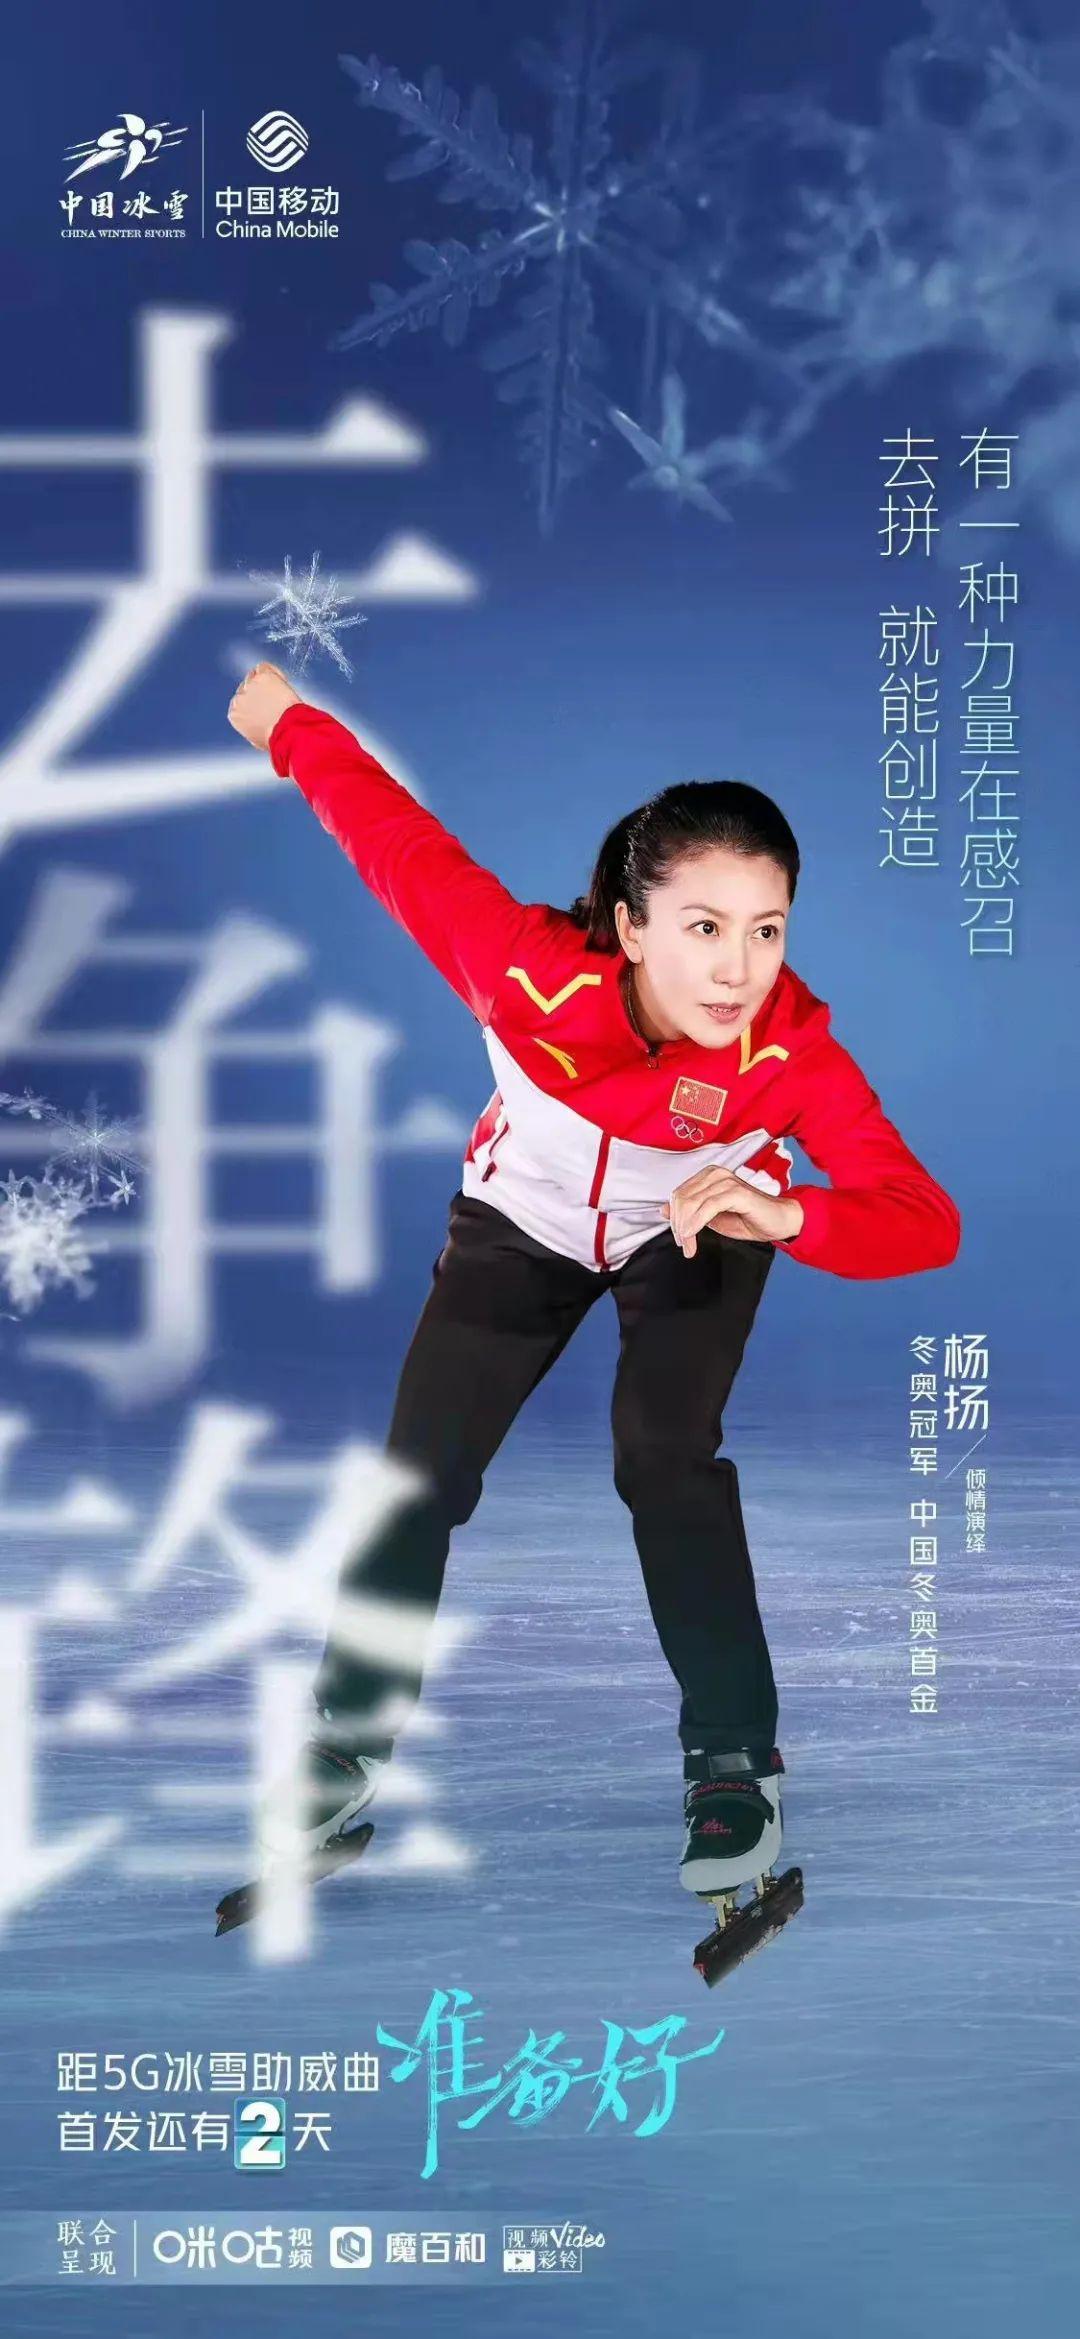 女运动员杨洋图片